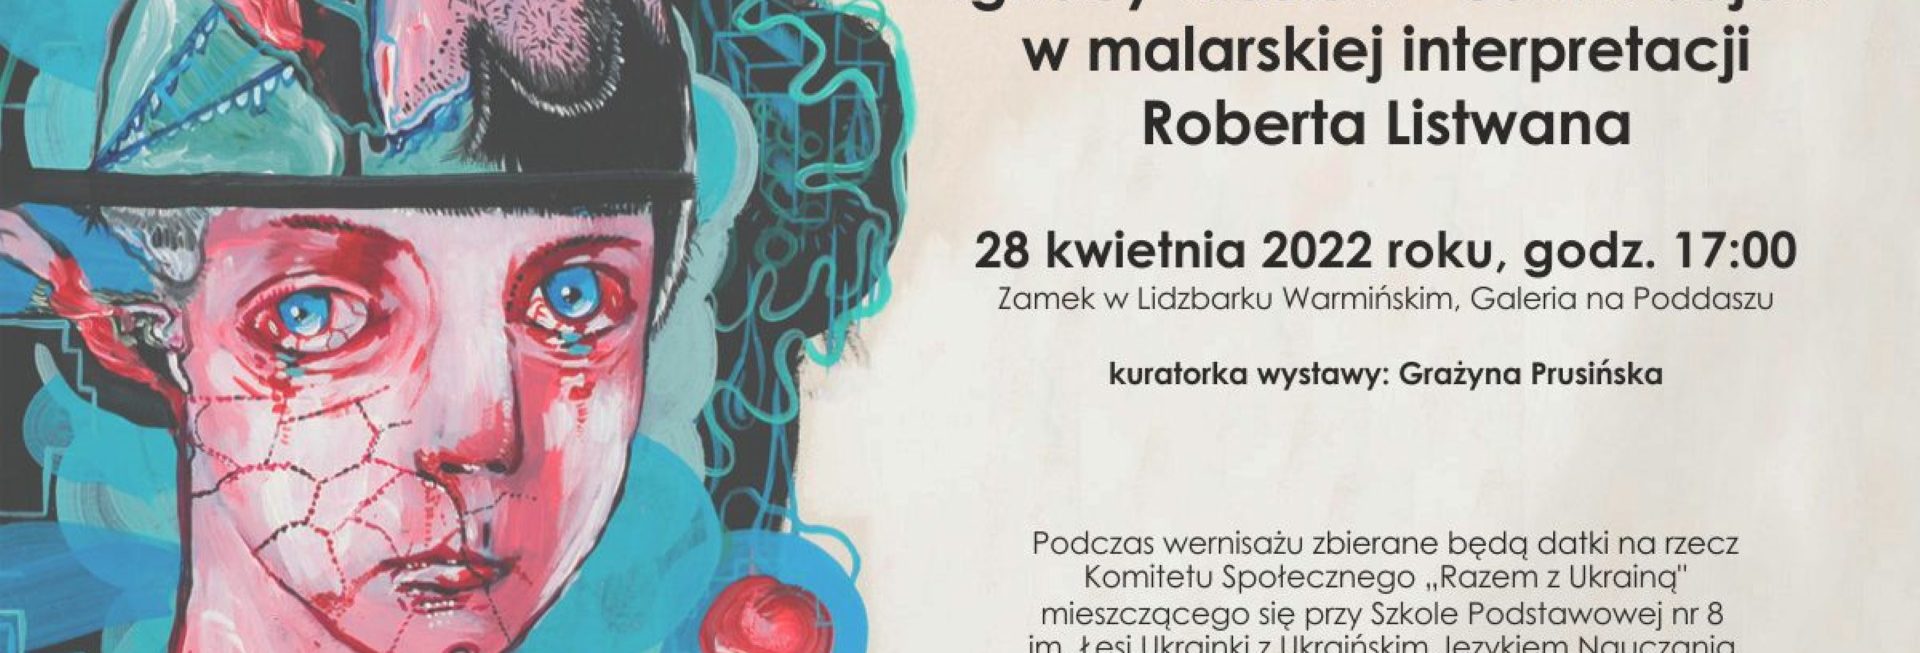 Plakat graficzny zapraszający do Lidzbarka Warmińskiego na wernisaż "Opowieści z morałem Ignacy Krasicki" Lidzbark Warmiński 2022.